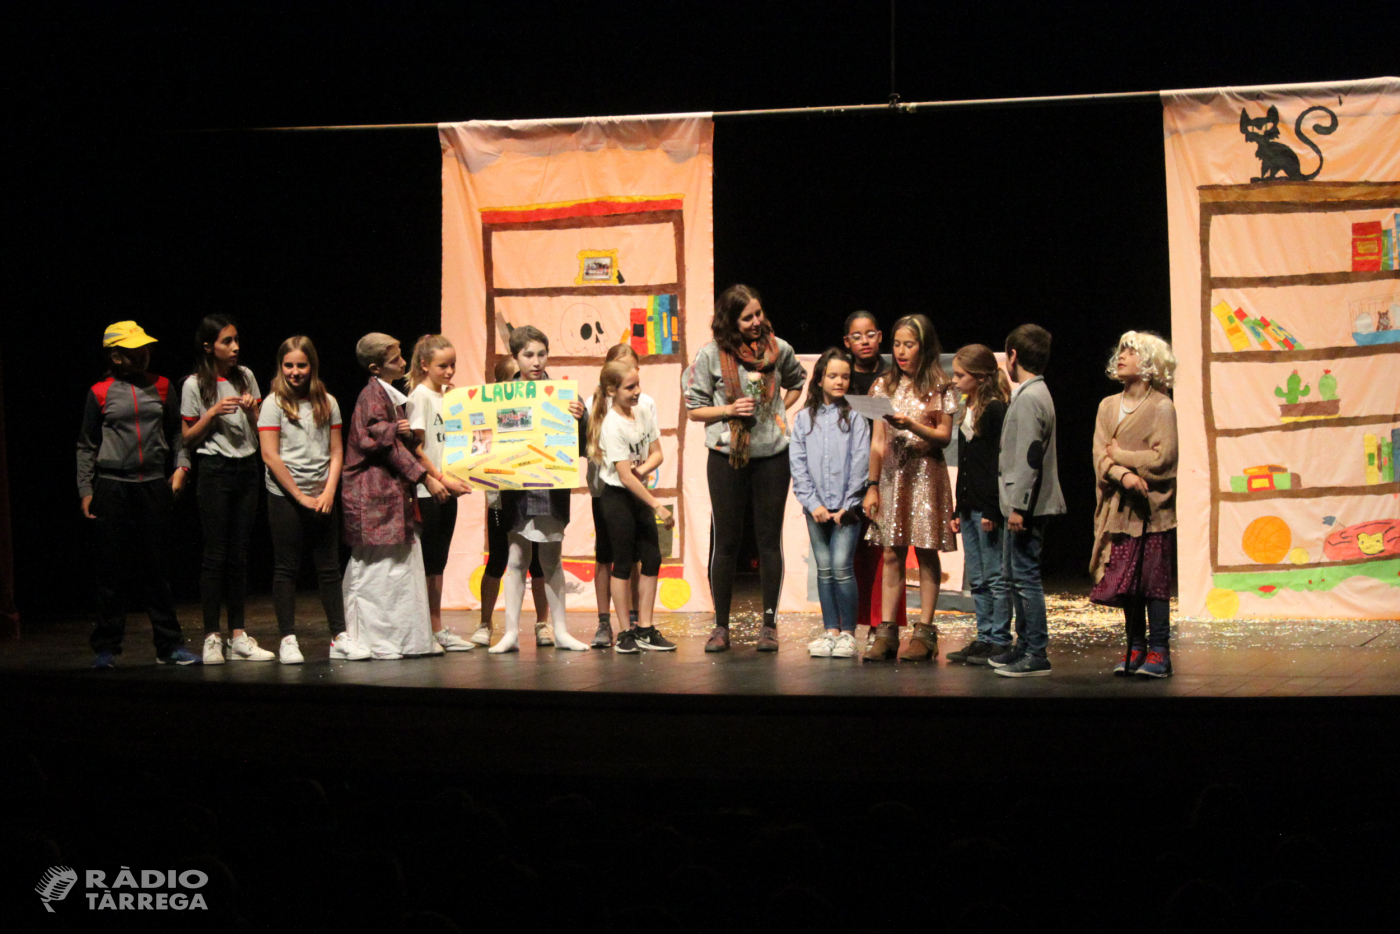 Èxit de la 1a Mostra Escolar de Teatre de Tàrrega, iniciativa pedagògica que fomenta les arts escèniques entre els joves